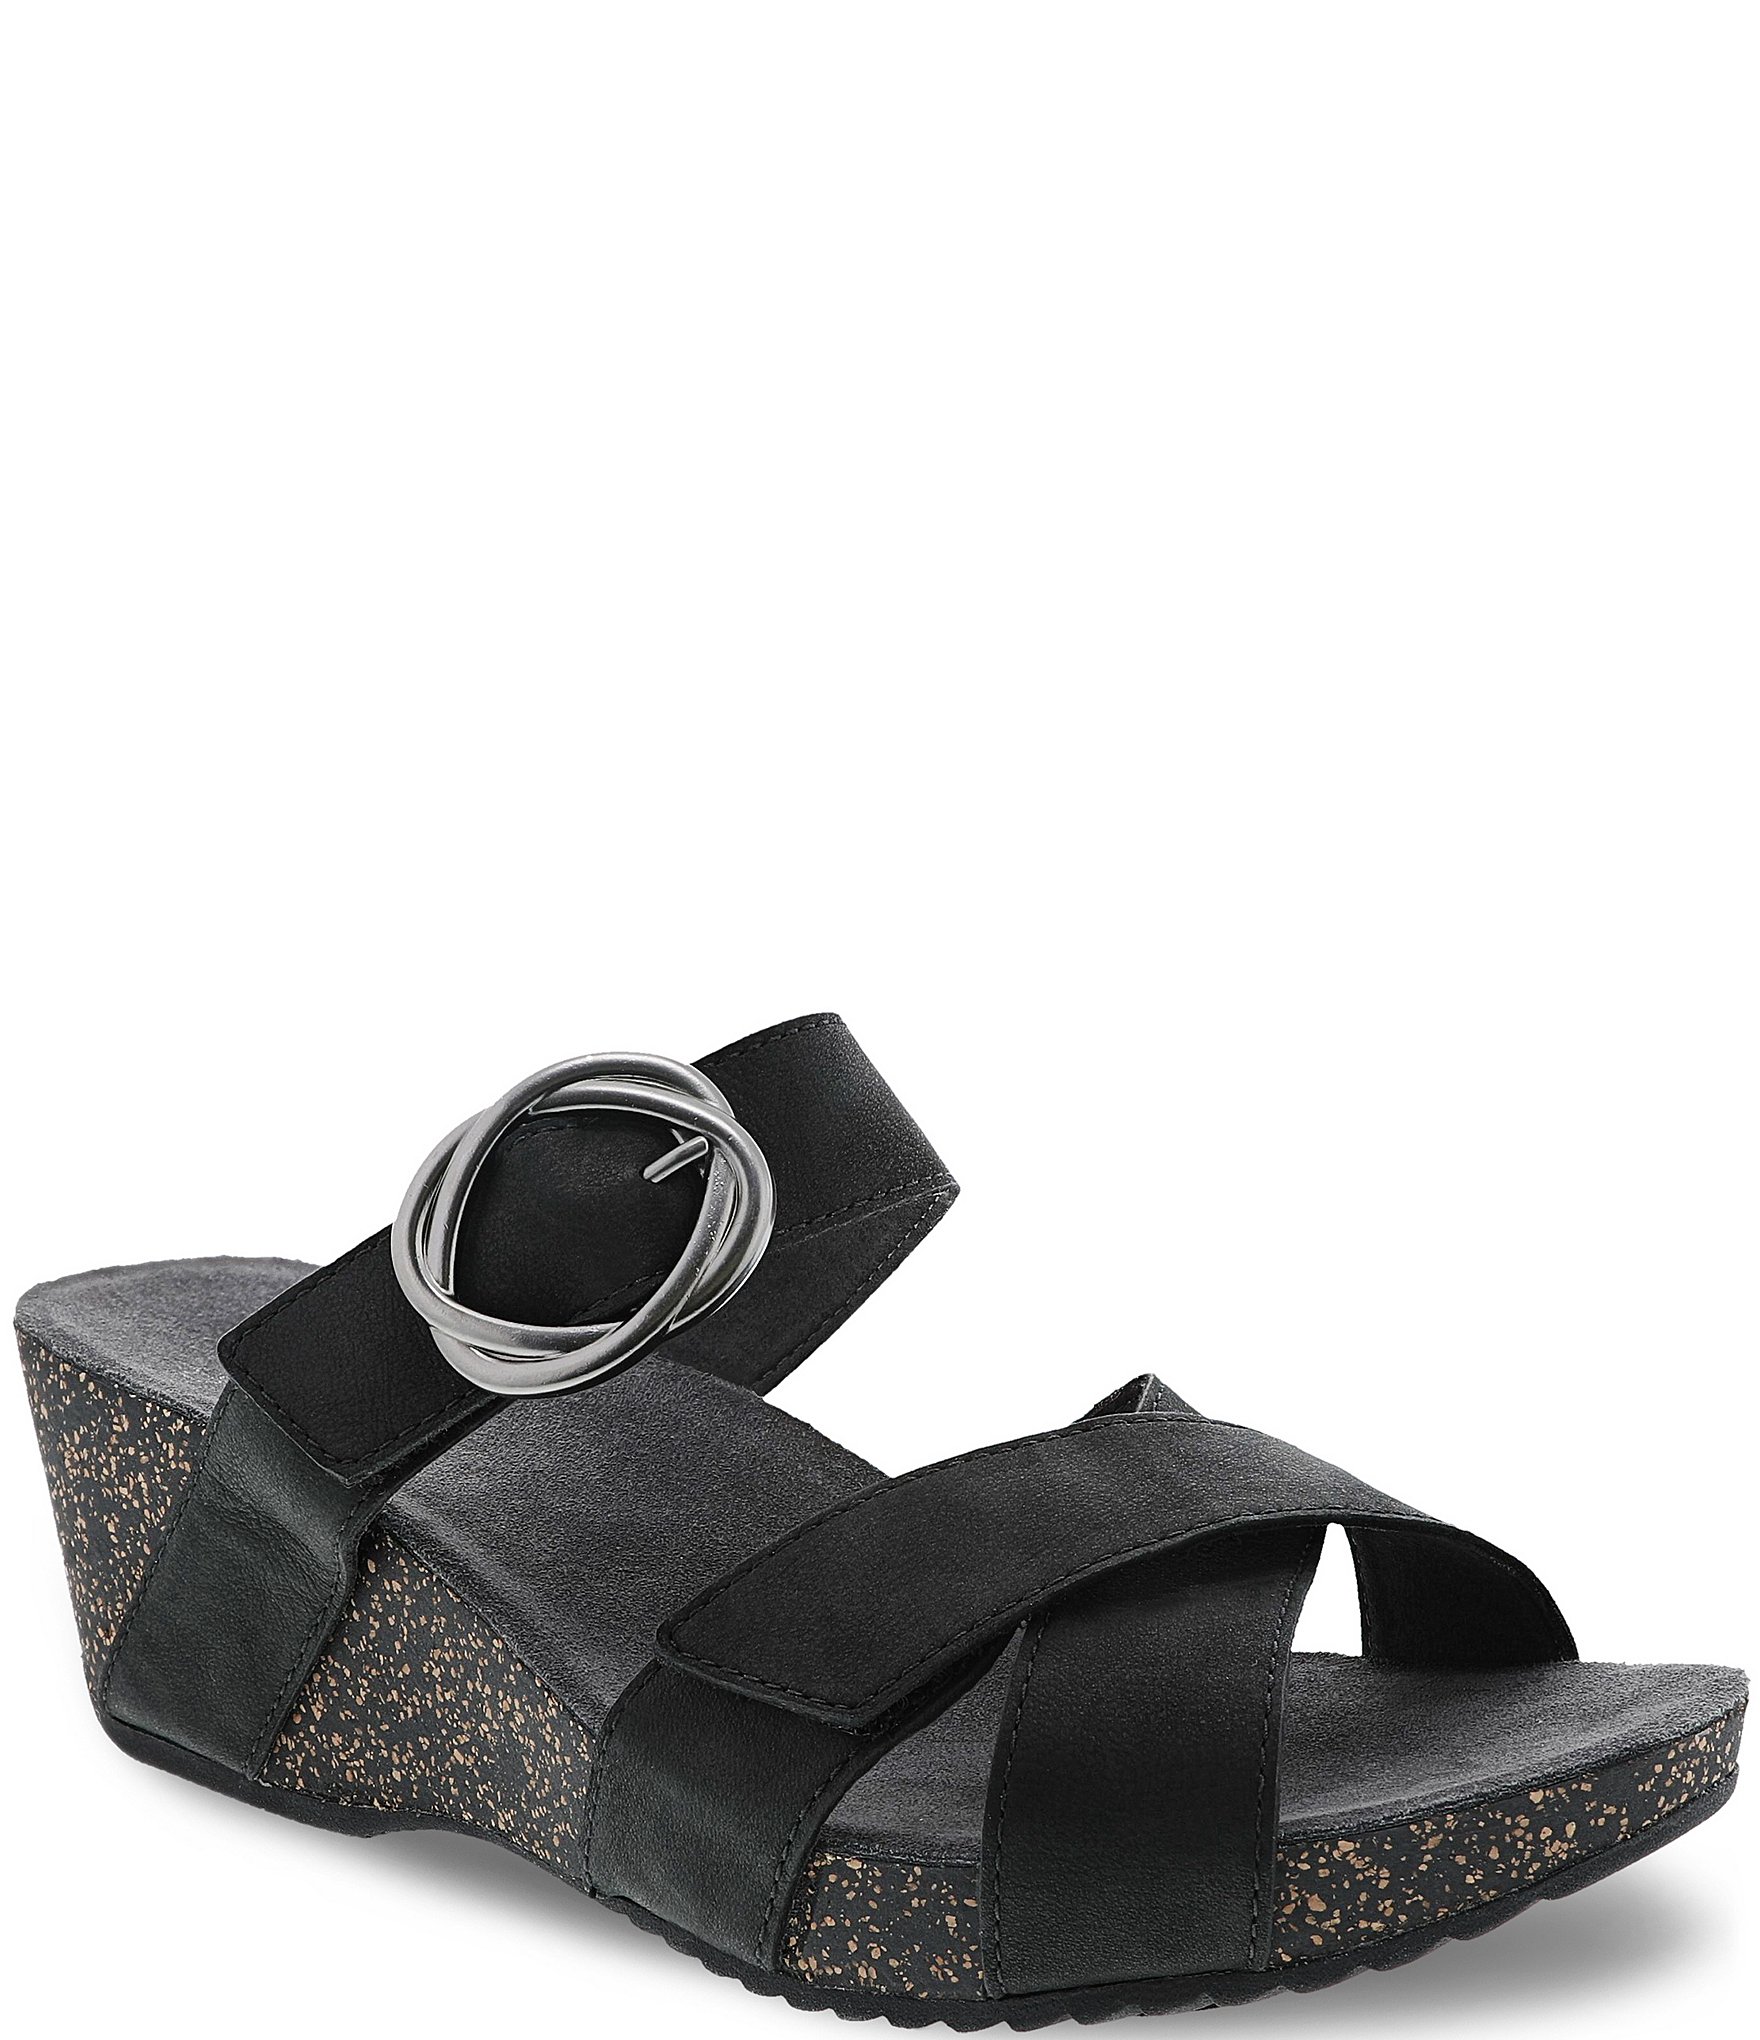 Dansko Susie Leather Slide Sandals 